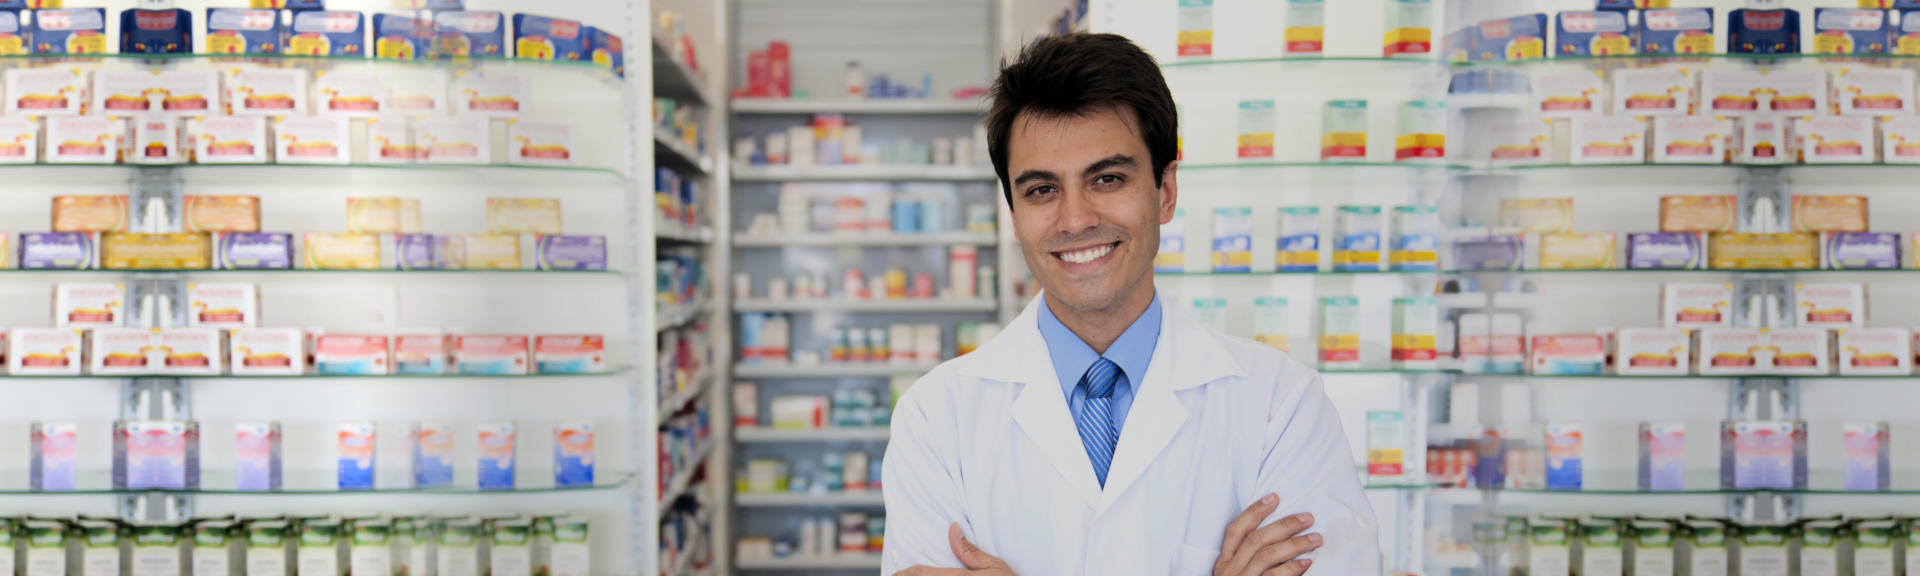 male pharmacist